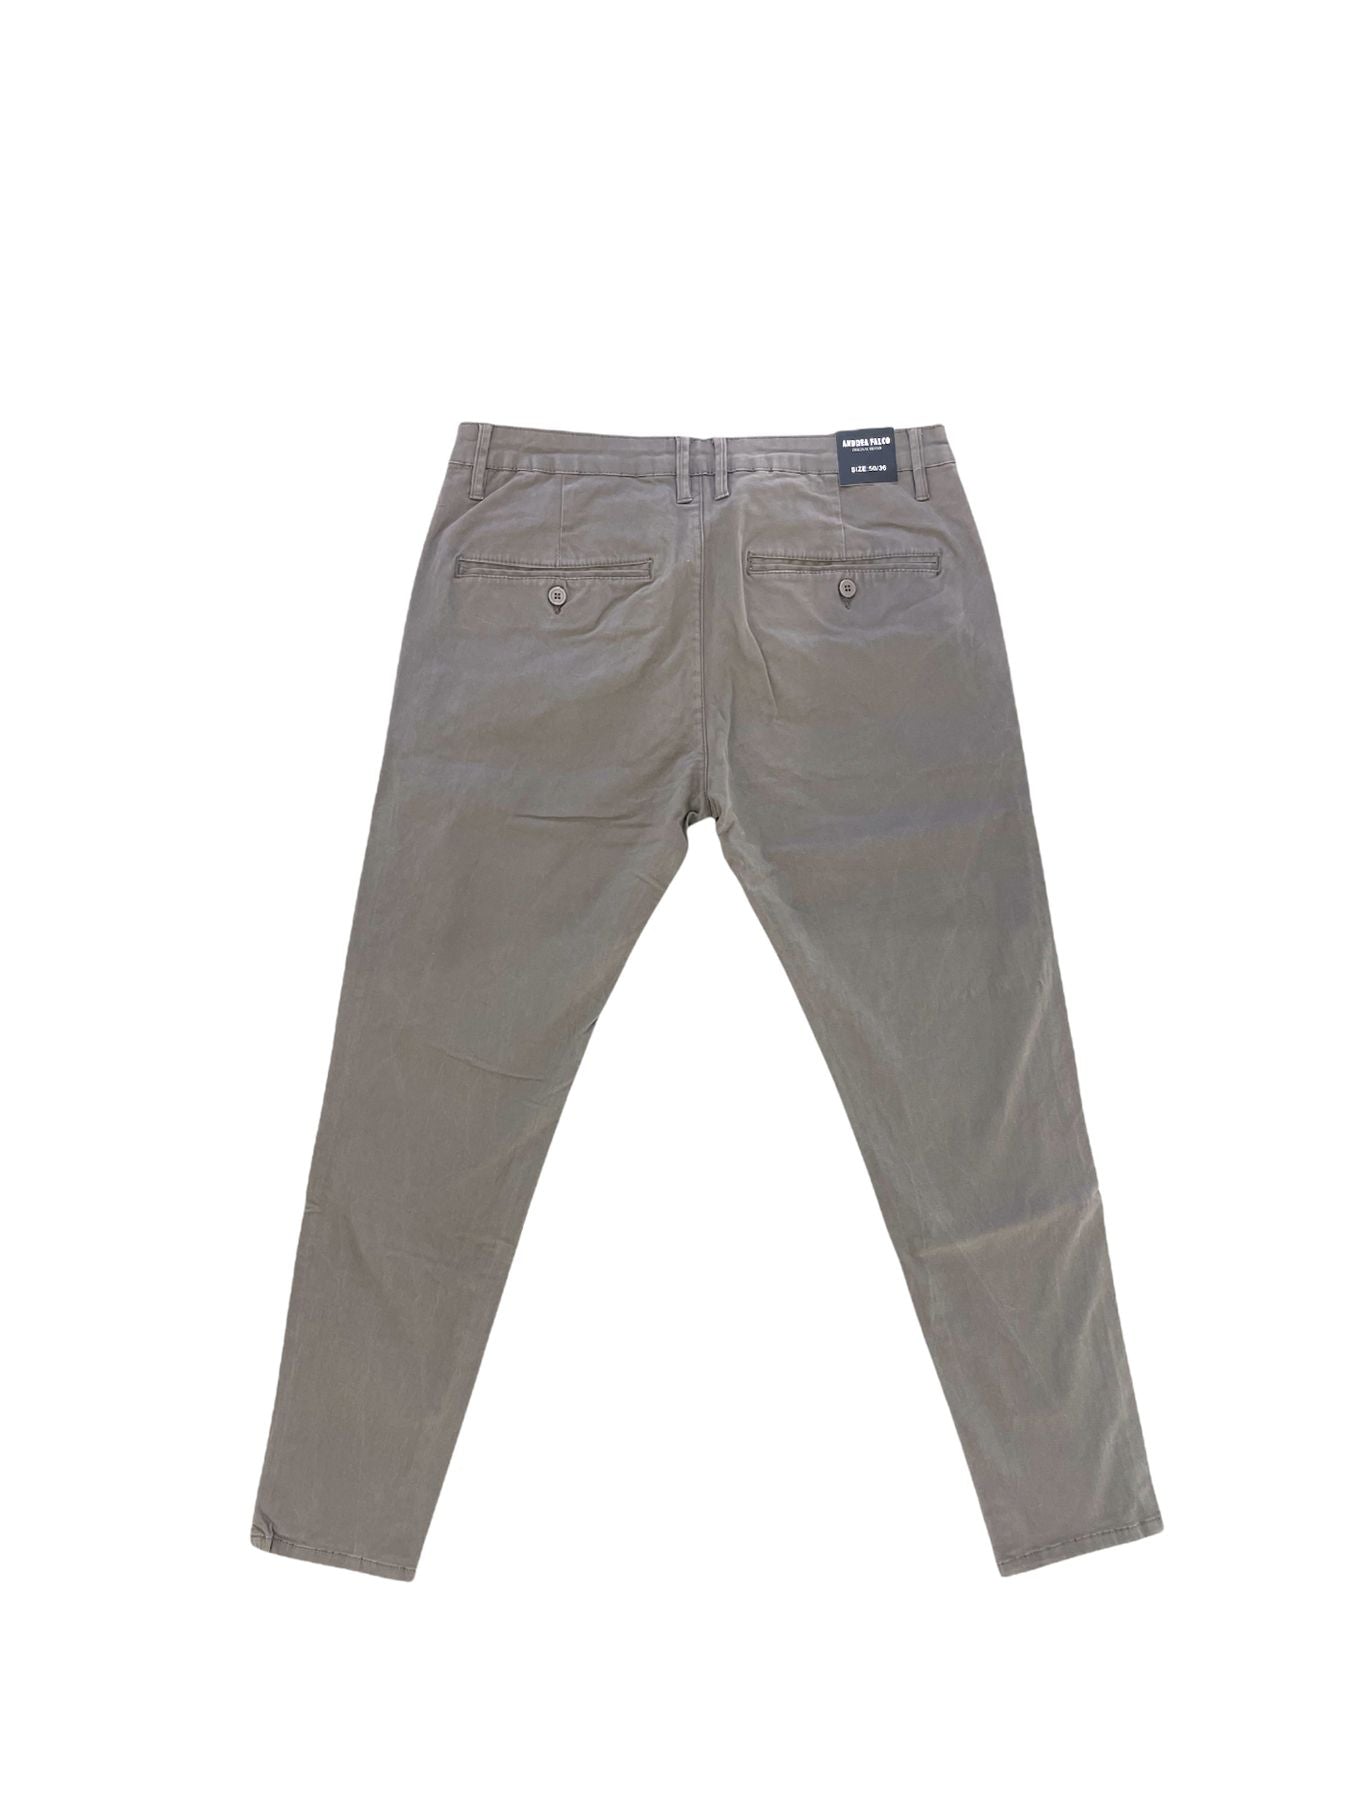 JK215-1 - Capri fit - Pantaloni